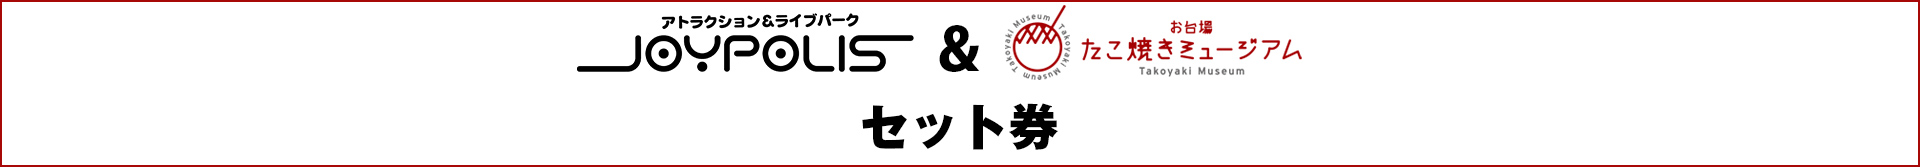 東京ジョイポリス&たこ焼きミュージアムセット券